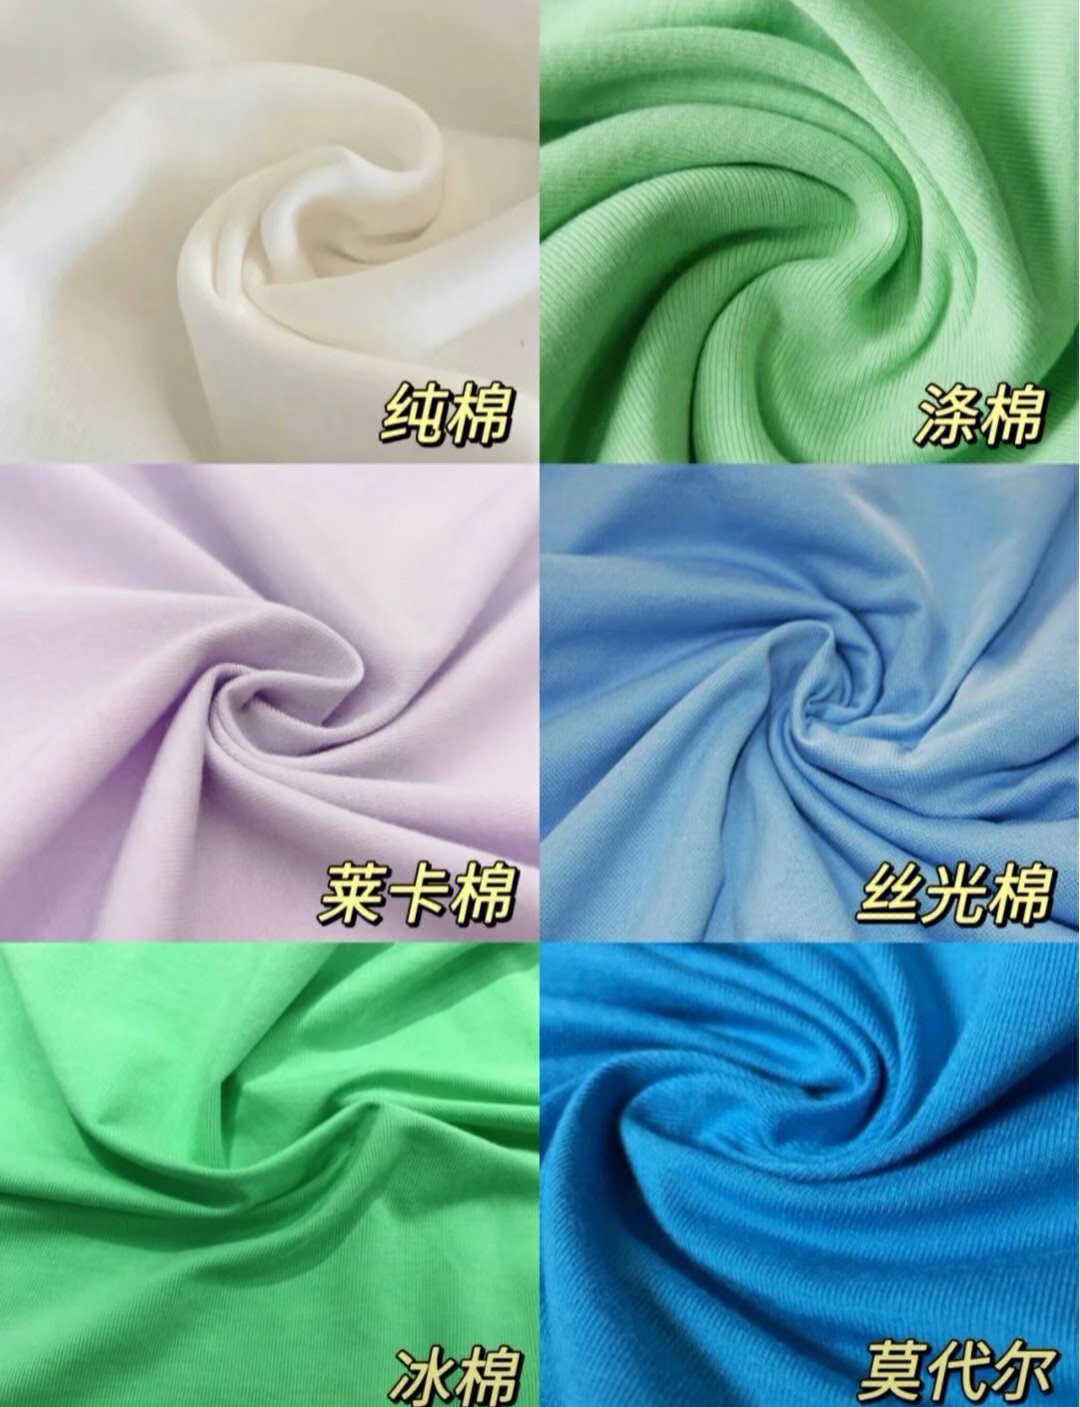 涤棉:涤纶与棉混纺,比纯棉柔软,不易起褶,但是爱起球透气吸汗性不如